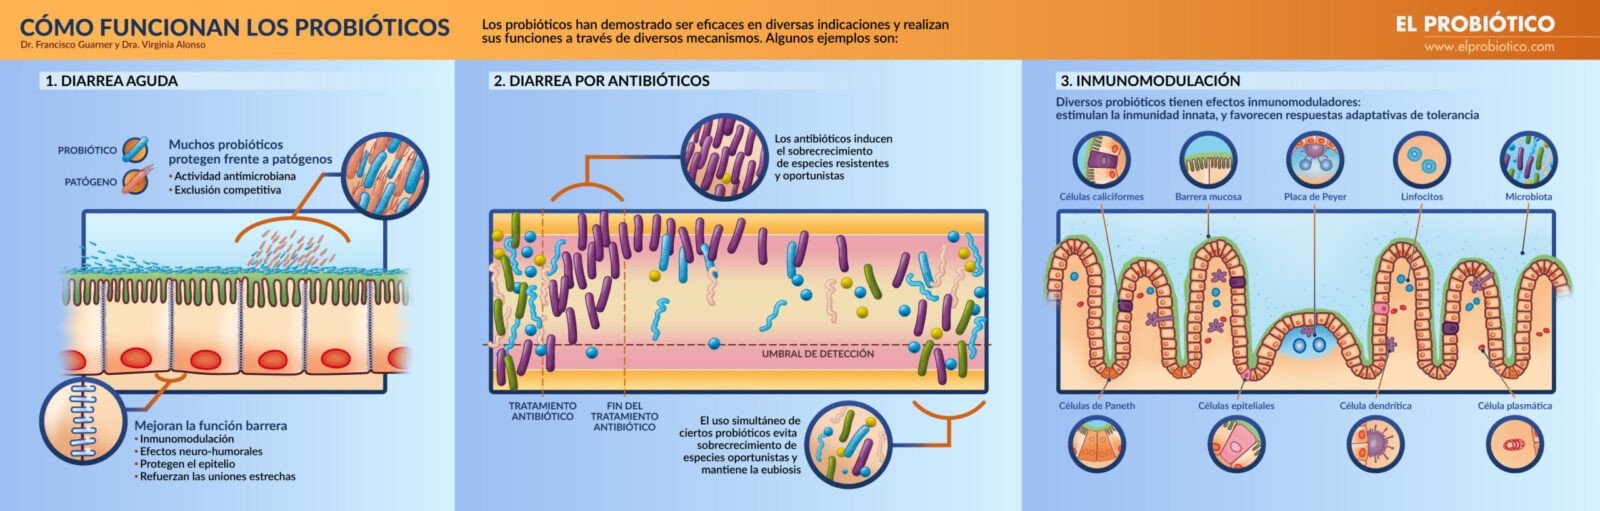 probioticos-un-analisis-completo-de-sus-ventajas-y-desventajas